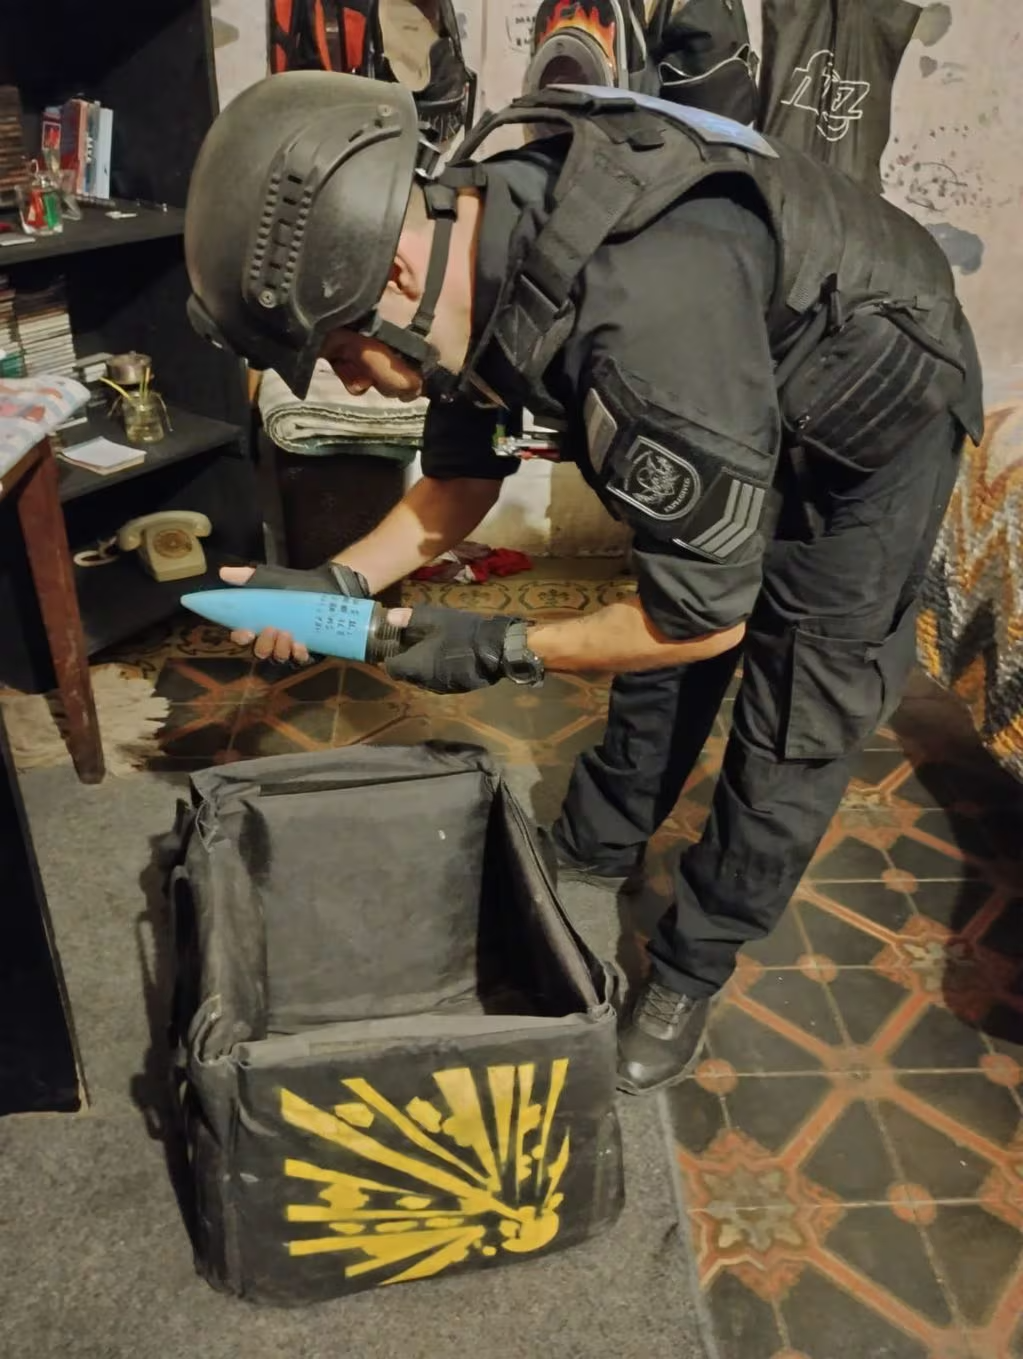 Un vecino de Córdoba descubrió un artefacto explosivo cerca de su hogar • Canal C